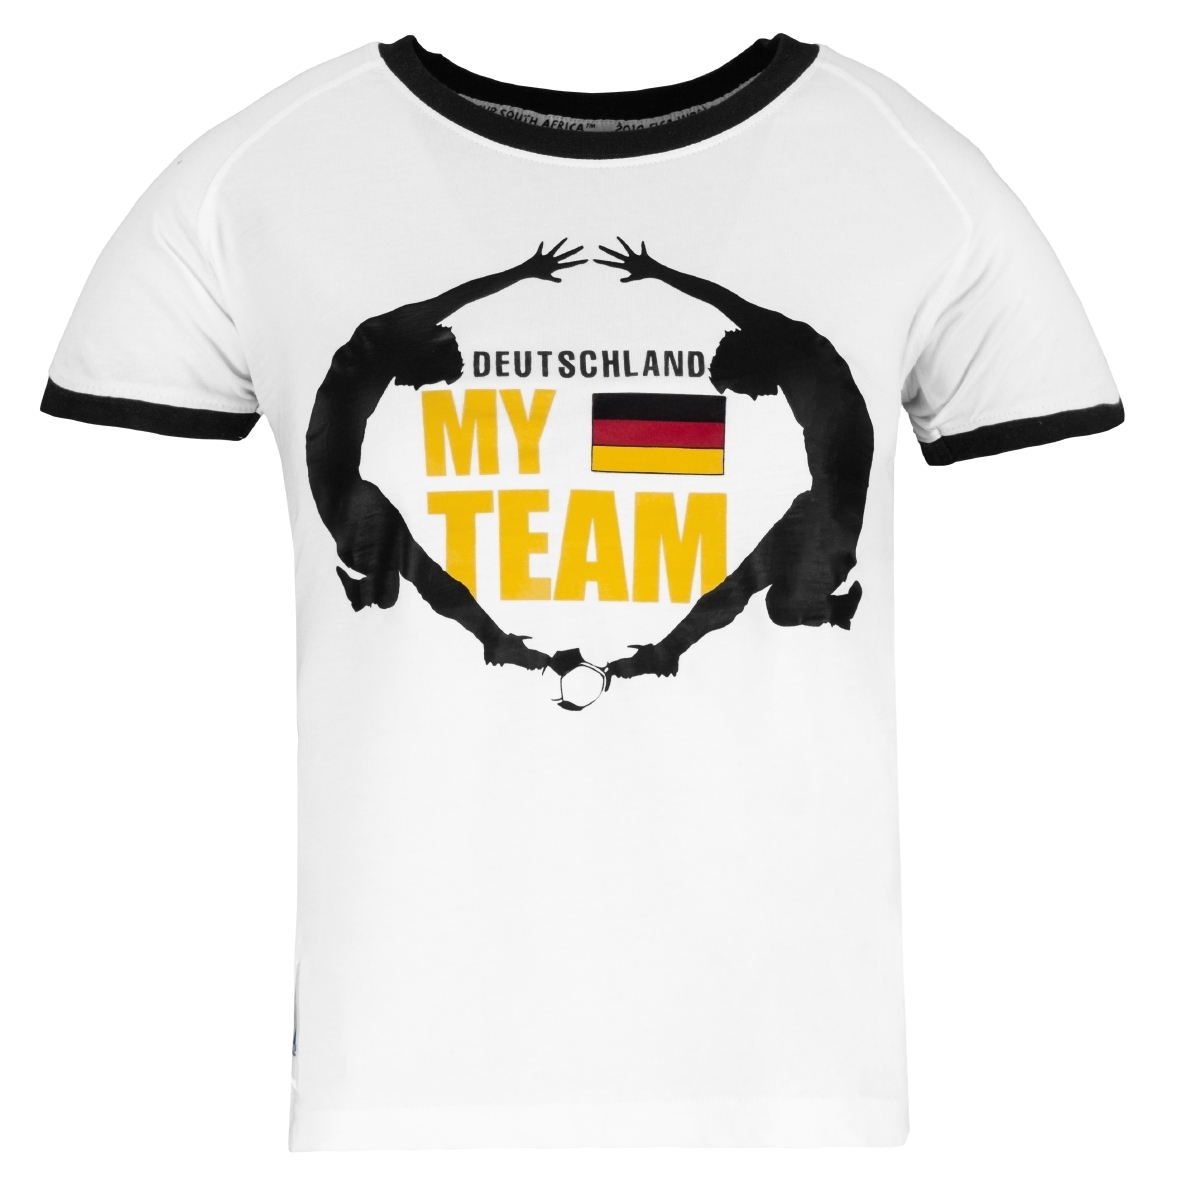 Fila FIFA WM 2010 TM EMBLEM D T-Shirt